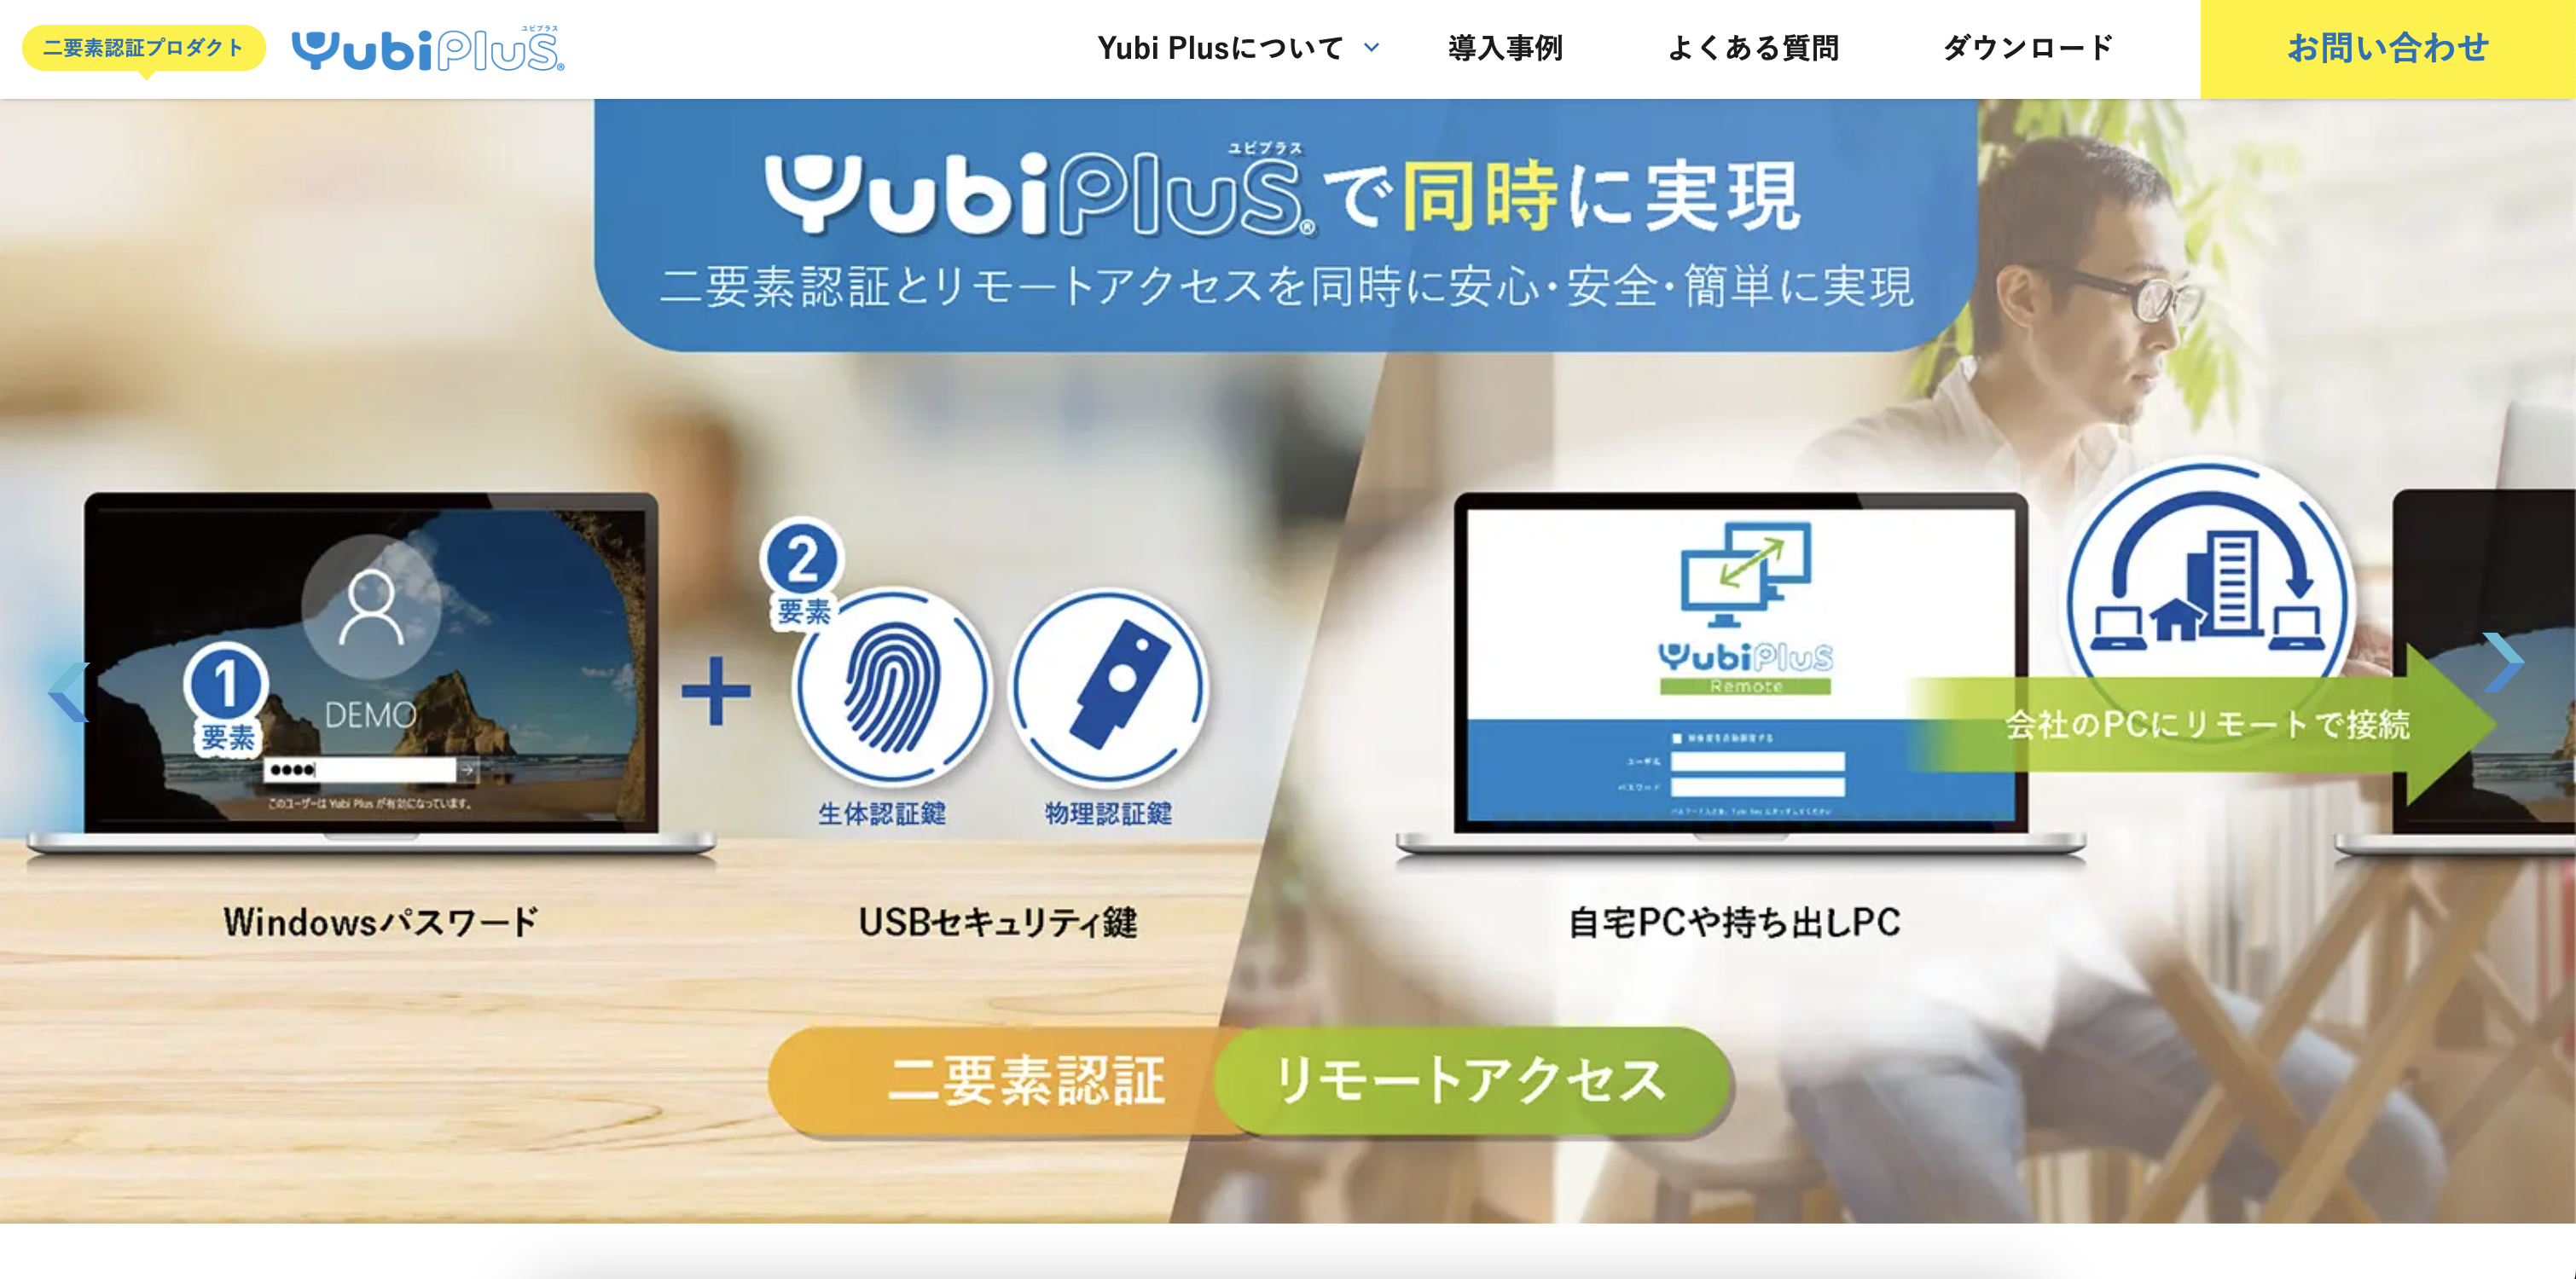 Yubi Plus製品サイト